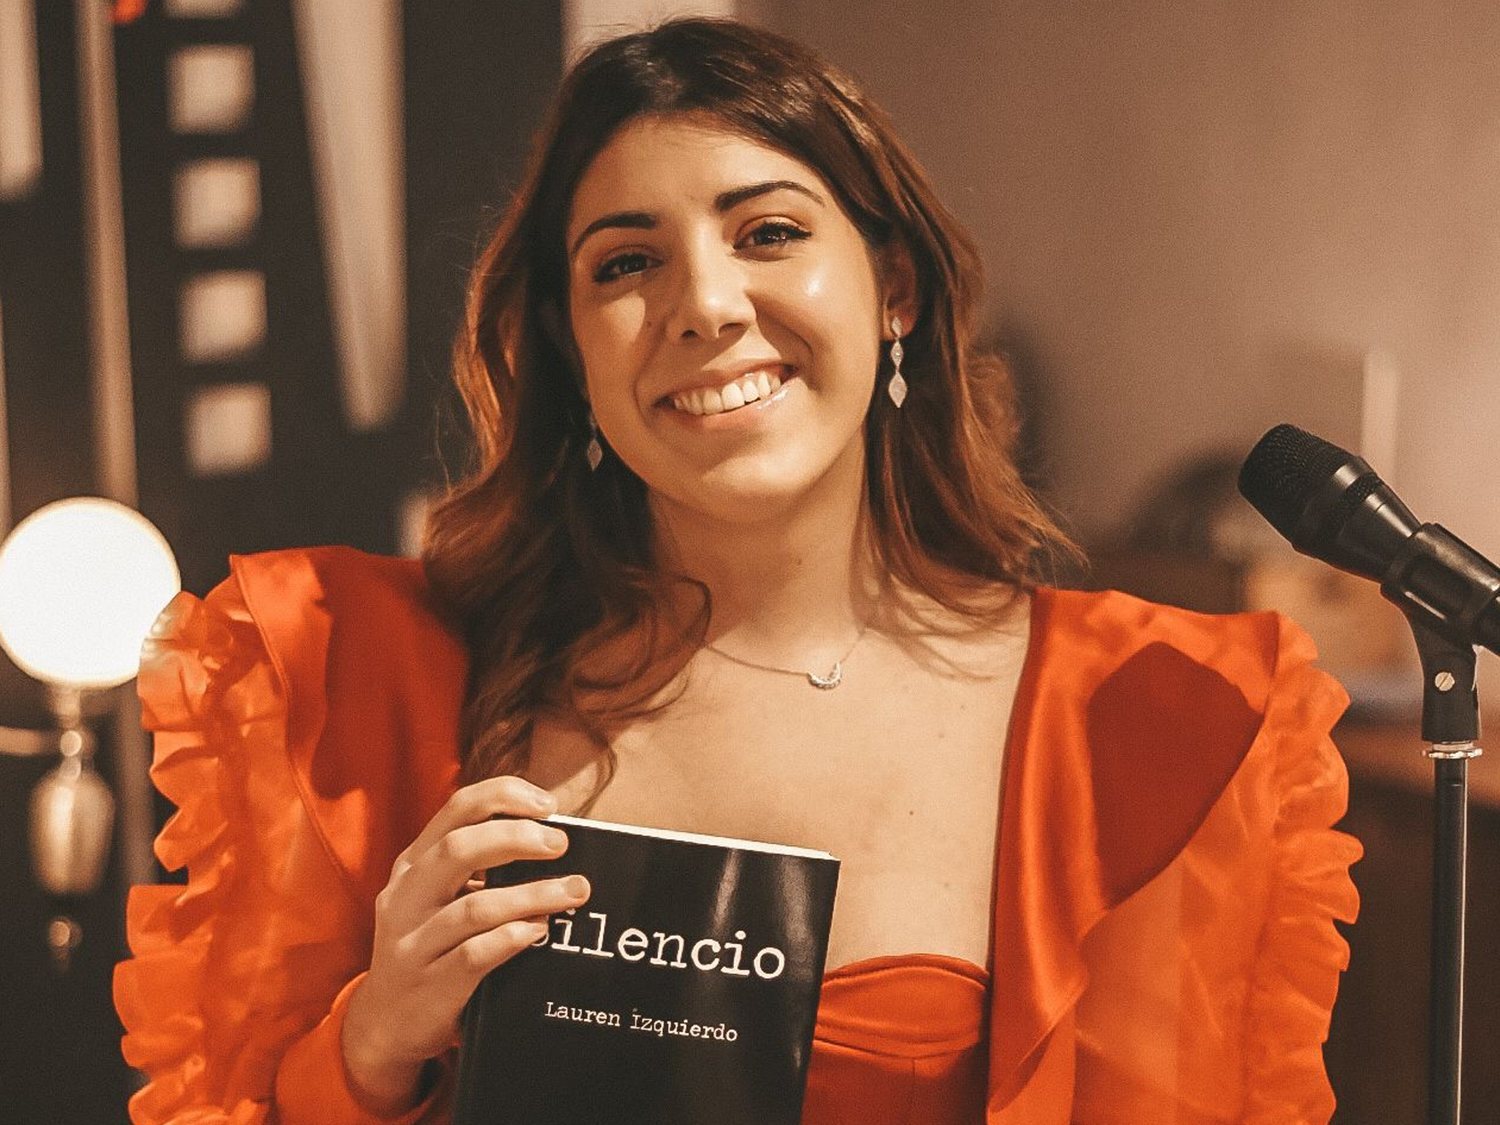 Lauren Izquierdo rompe el 'Silencio' con su novela debut: éxito, fama y fracaso